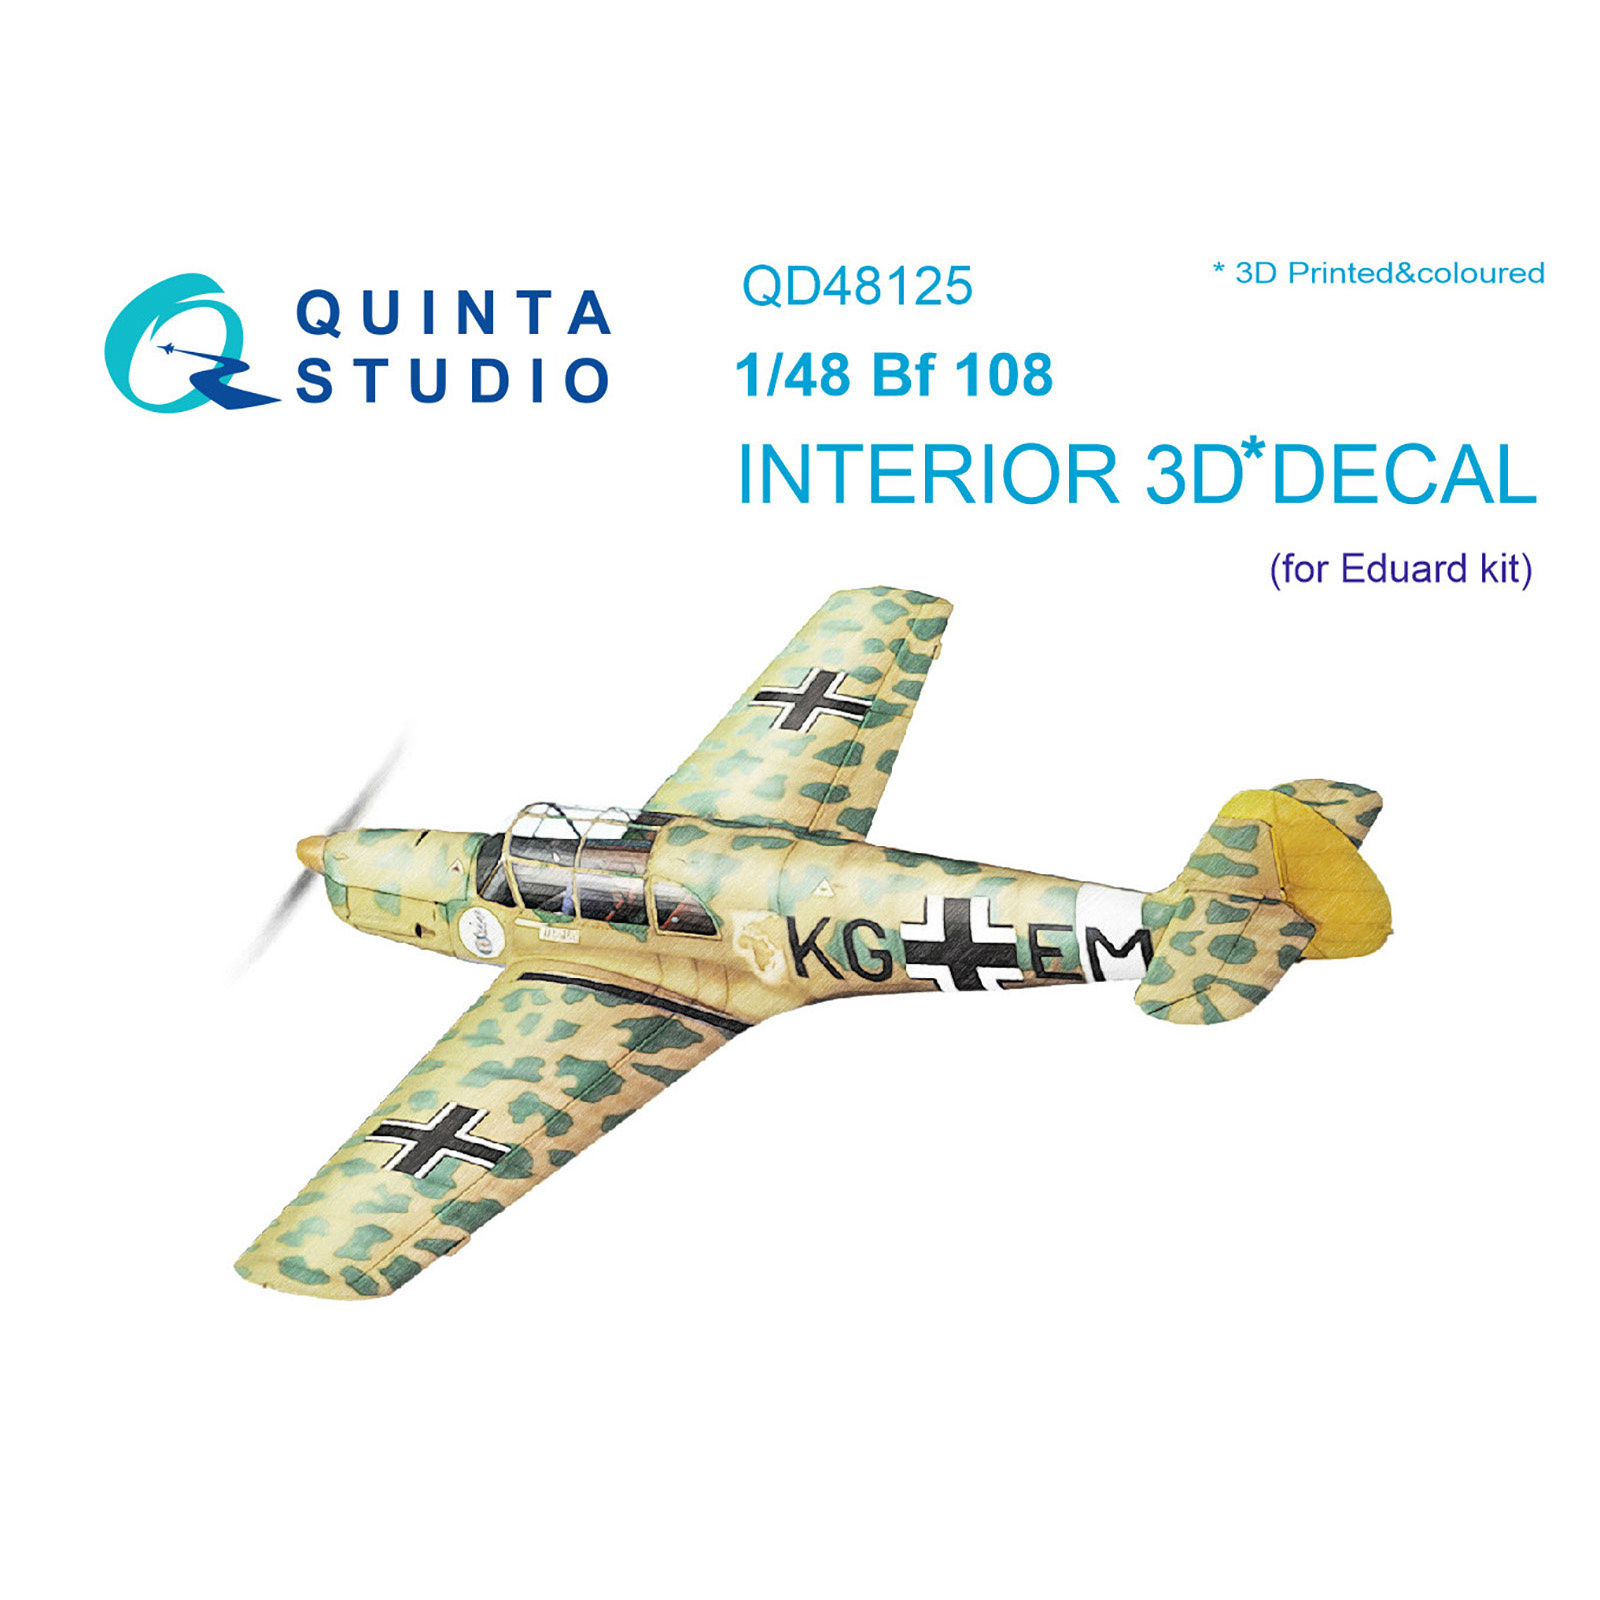 QD48125 Quinta Studio 1/48 3D Декаль интерьера кабины Bf108 (Eduard)